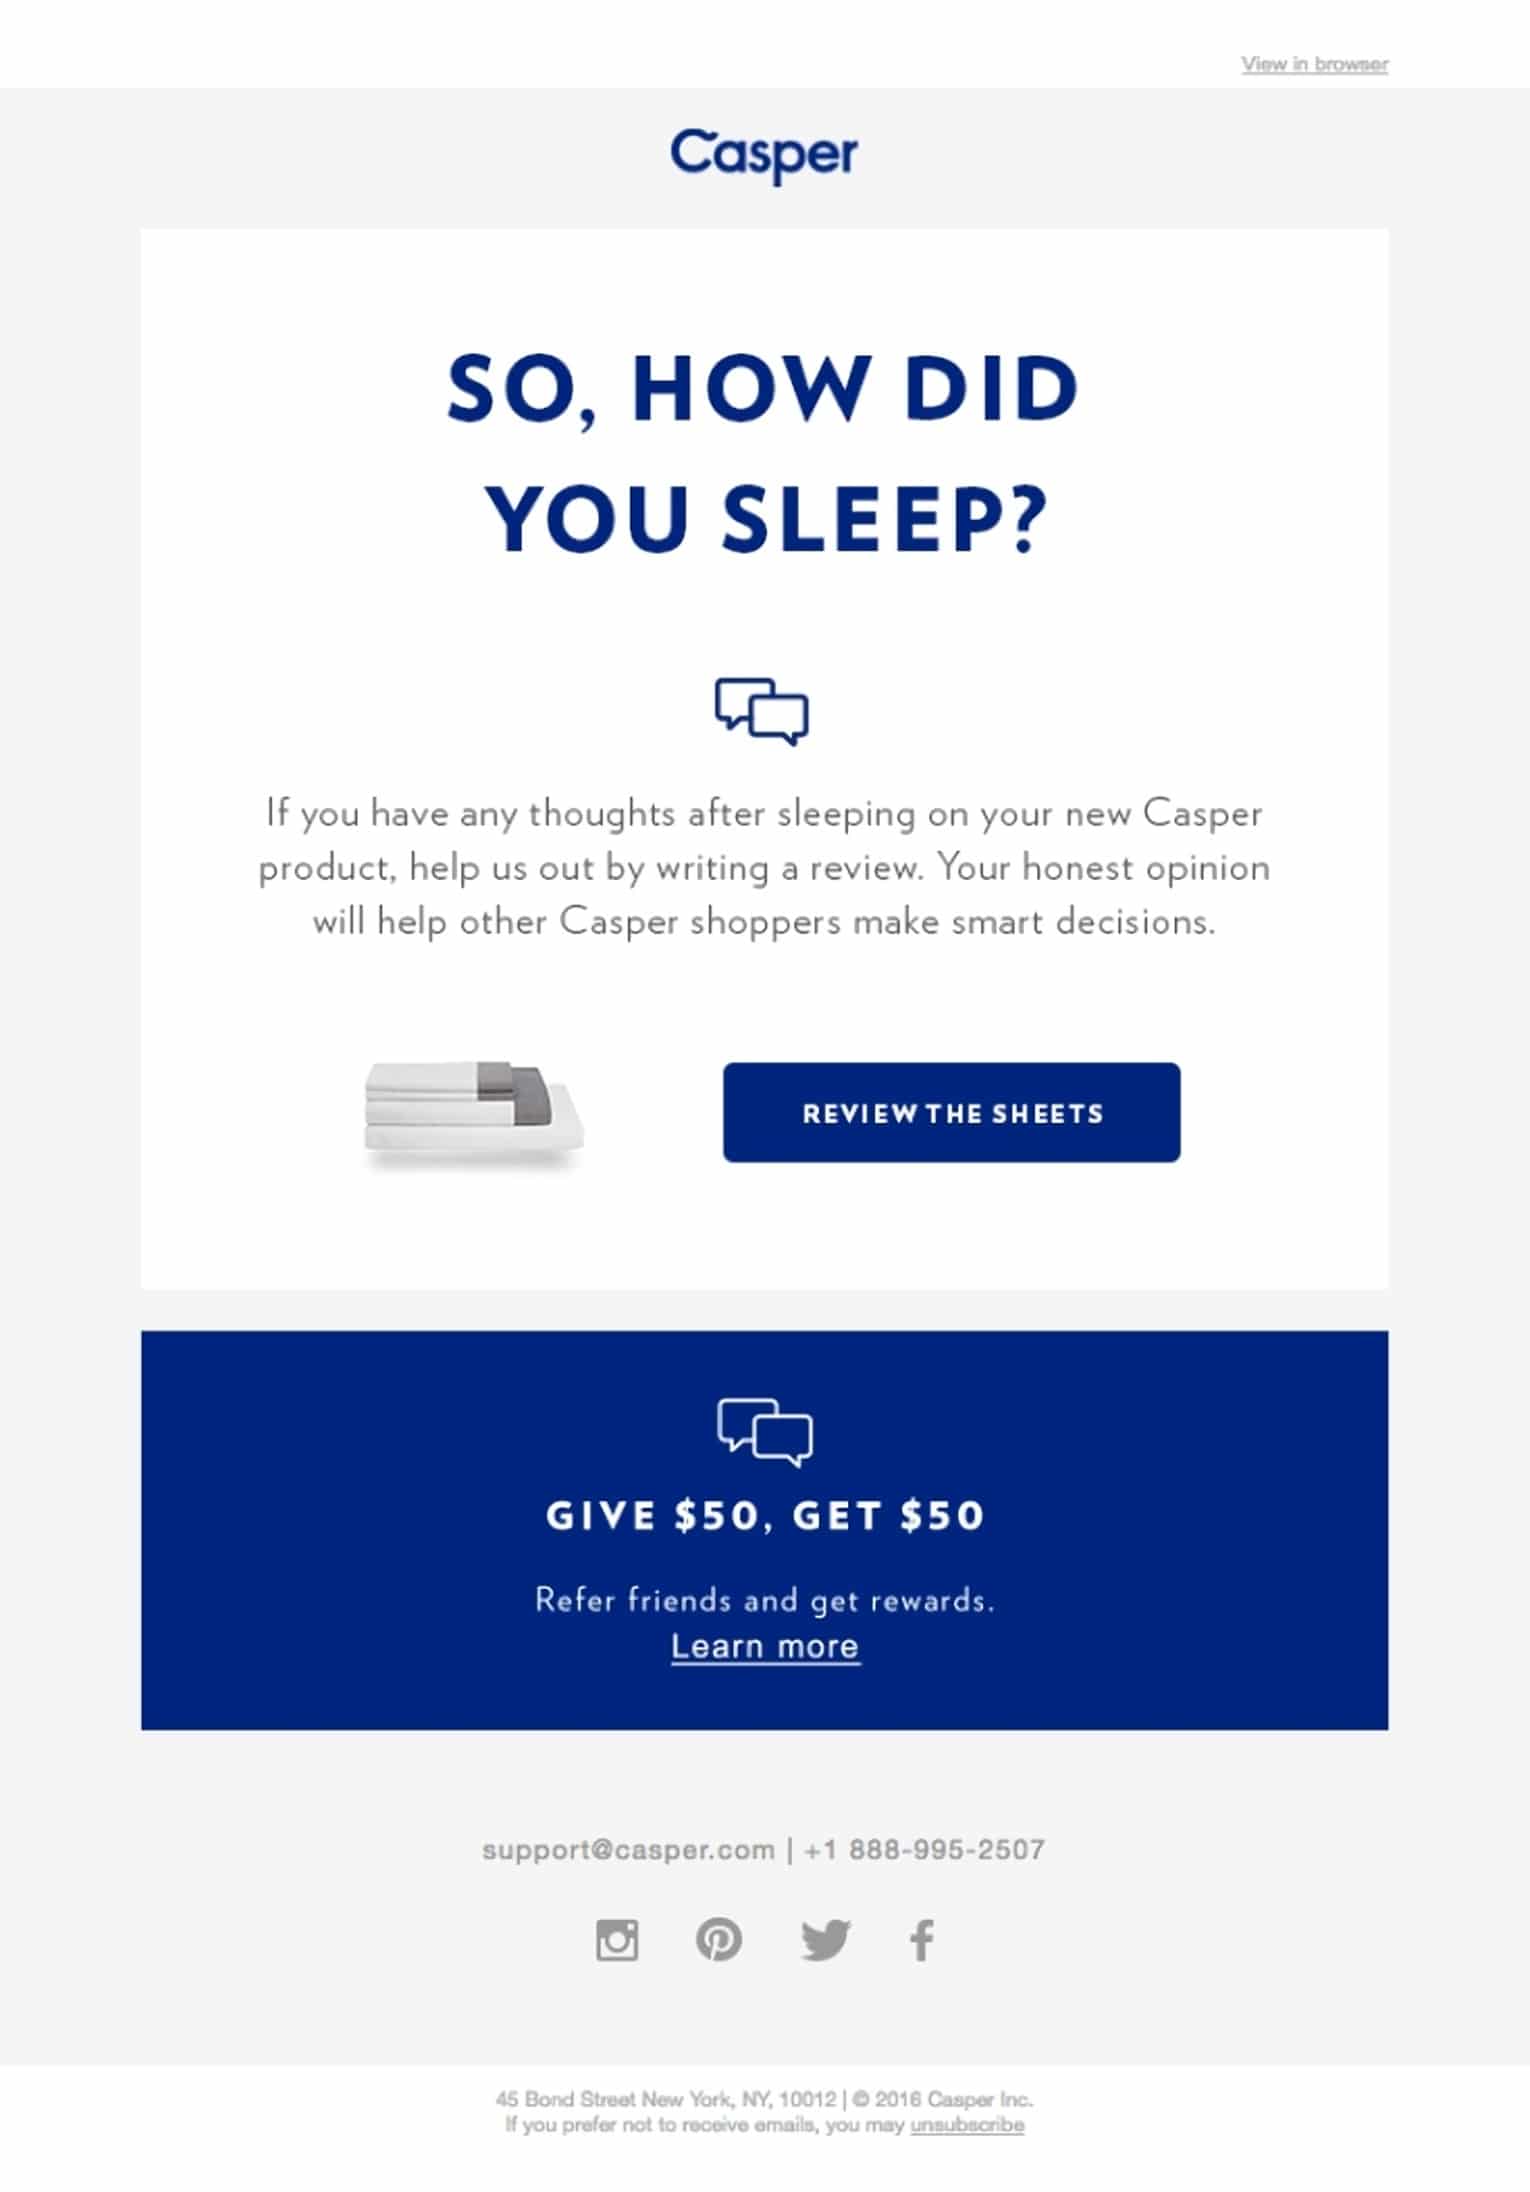 Casper email featuring a customer feedback request